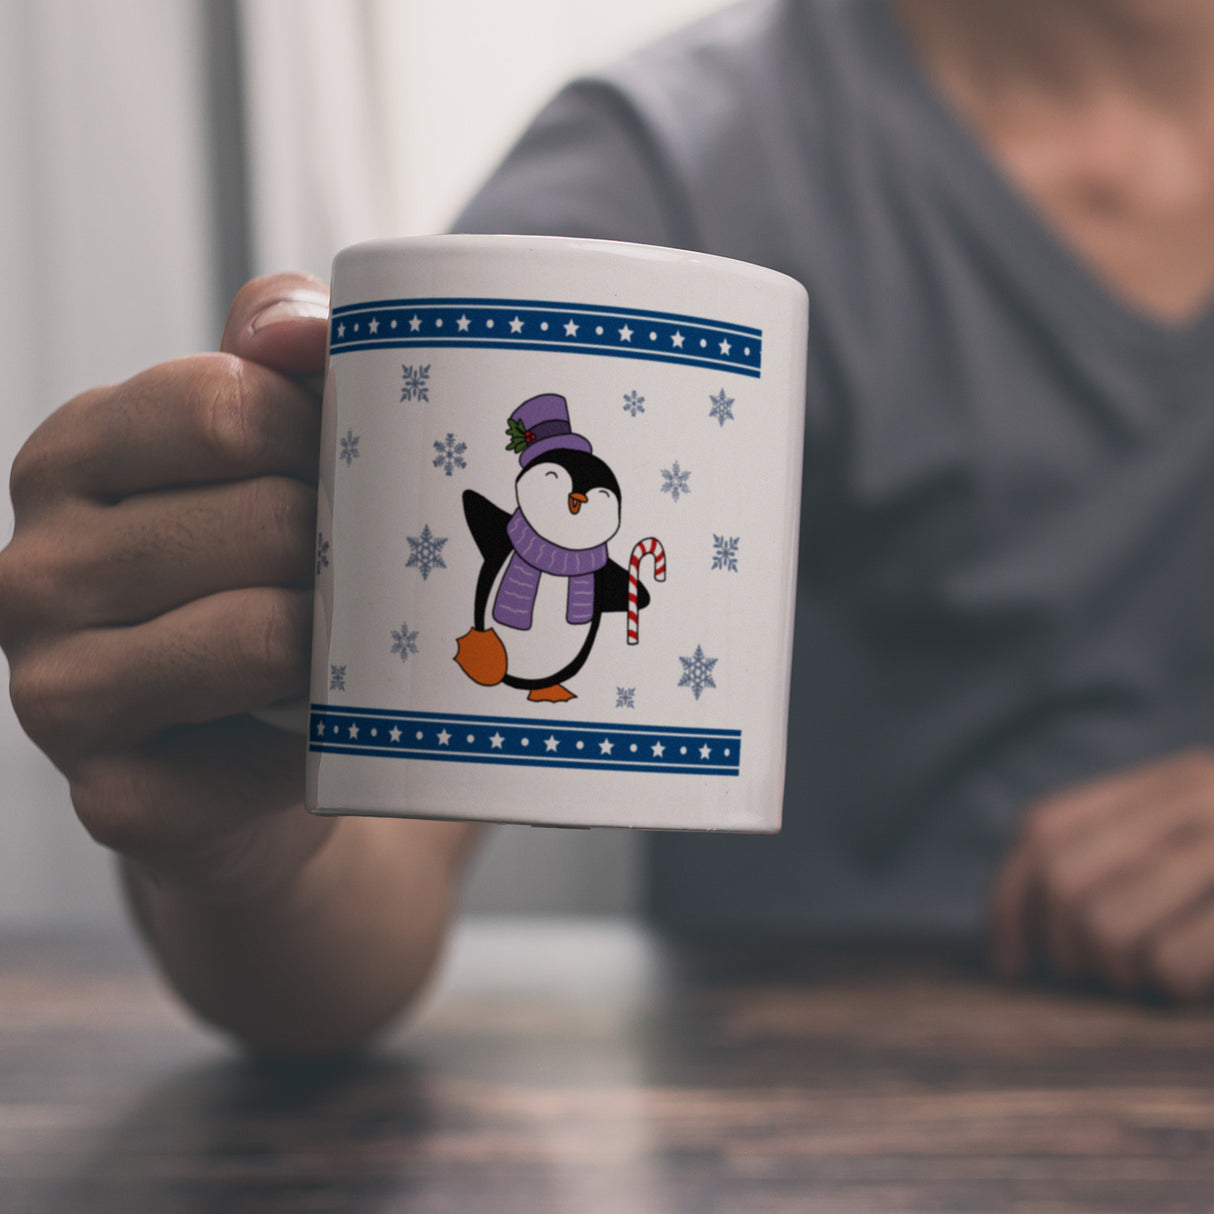 Tanzender Winter Pinguin Weihnachten Kaffeebecher